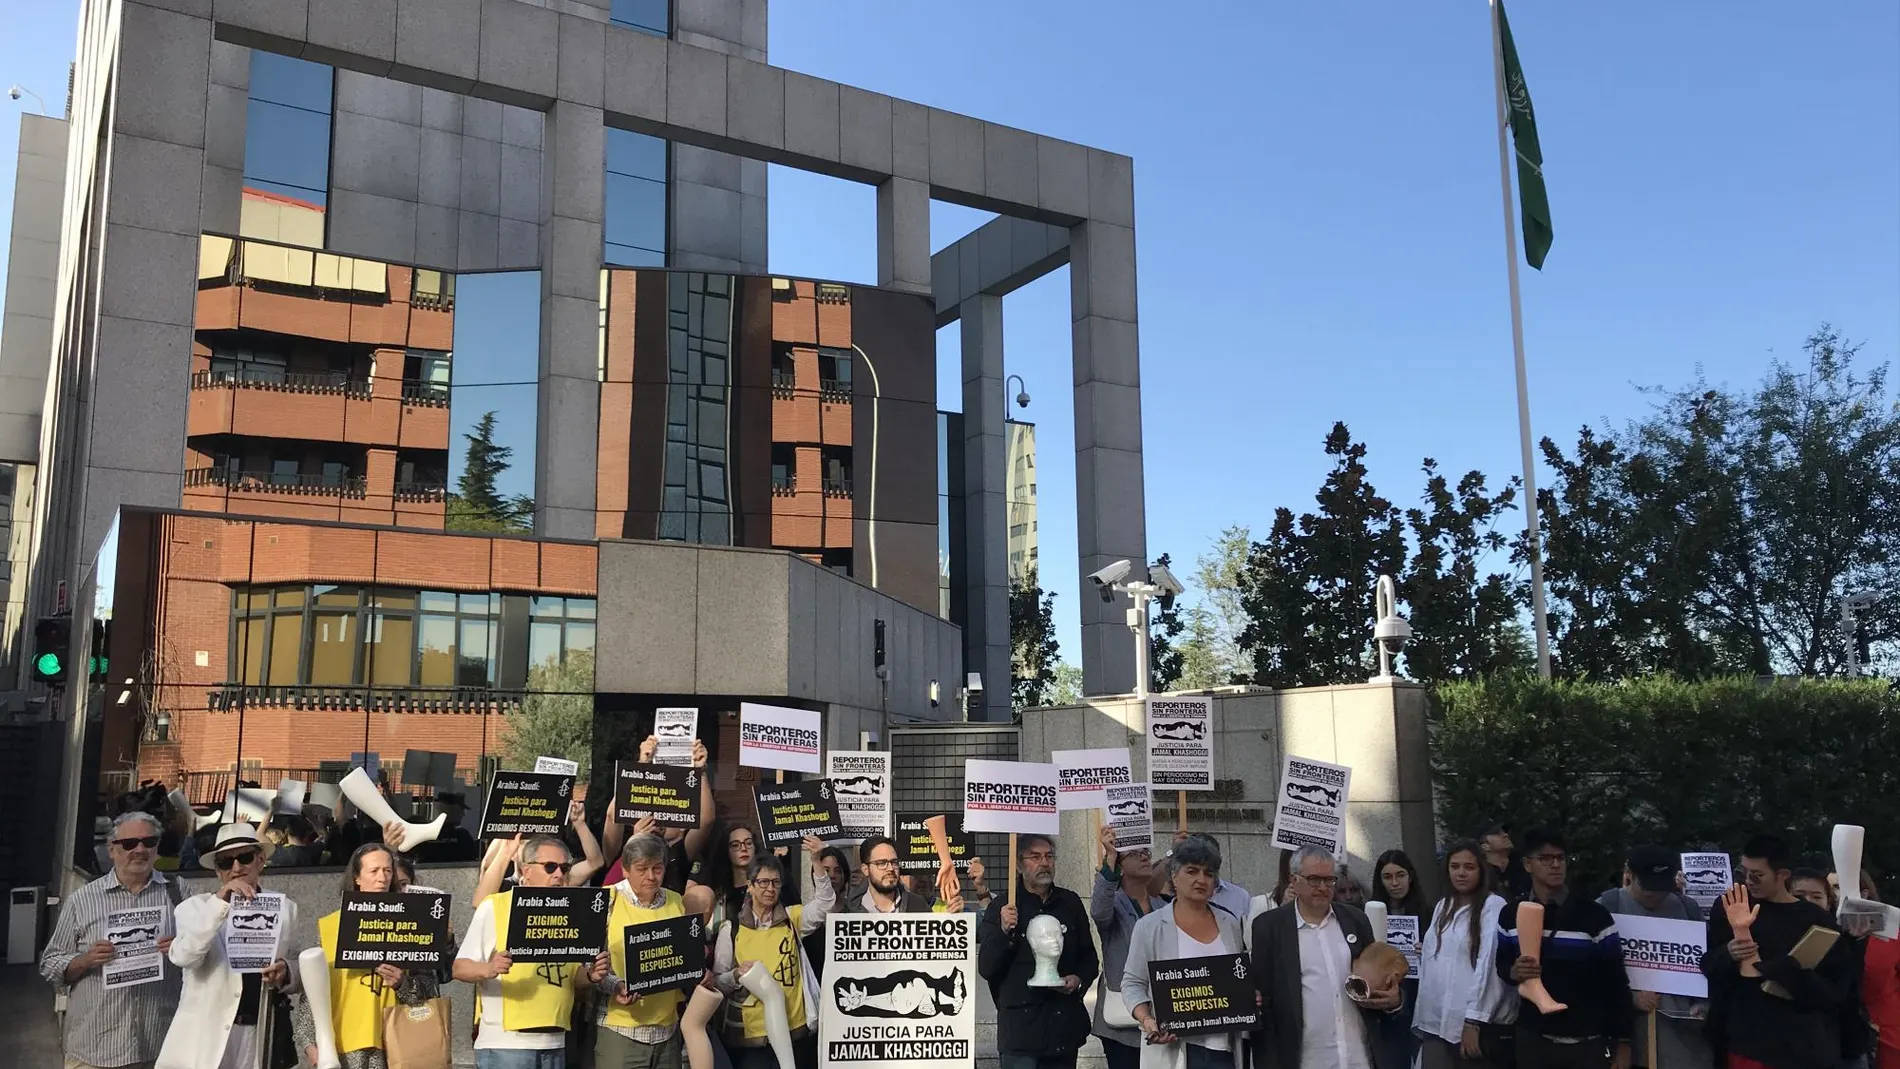 Protesta ante la Embajada de Arabia Saudí en Madrid por el caso Khashoggi: “Sin periodismo no hay democracia”